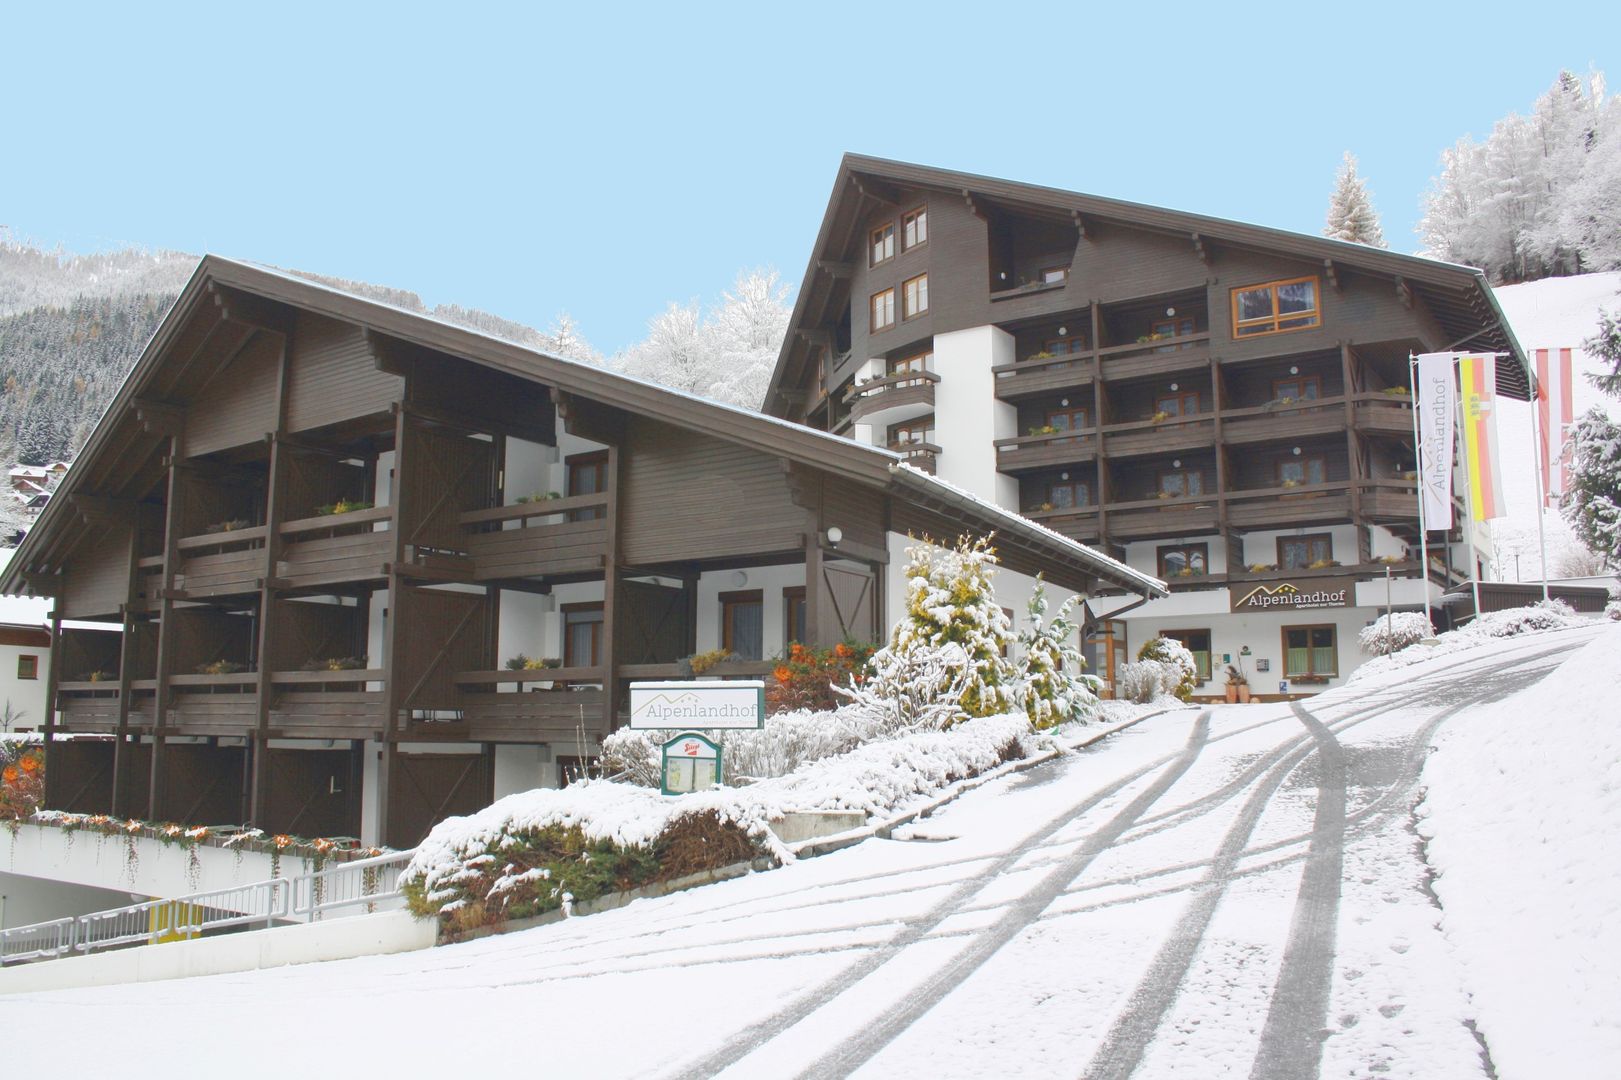 Slide1 - Appartements Alpenlandhof